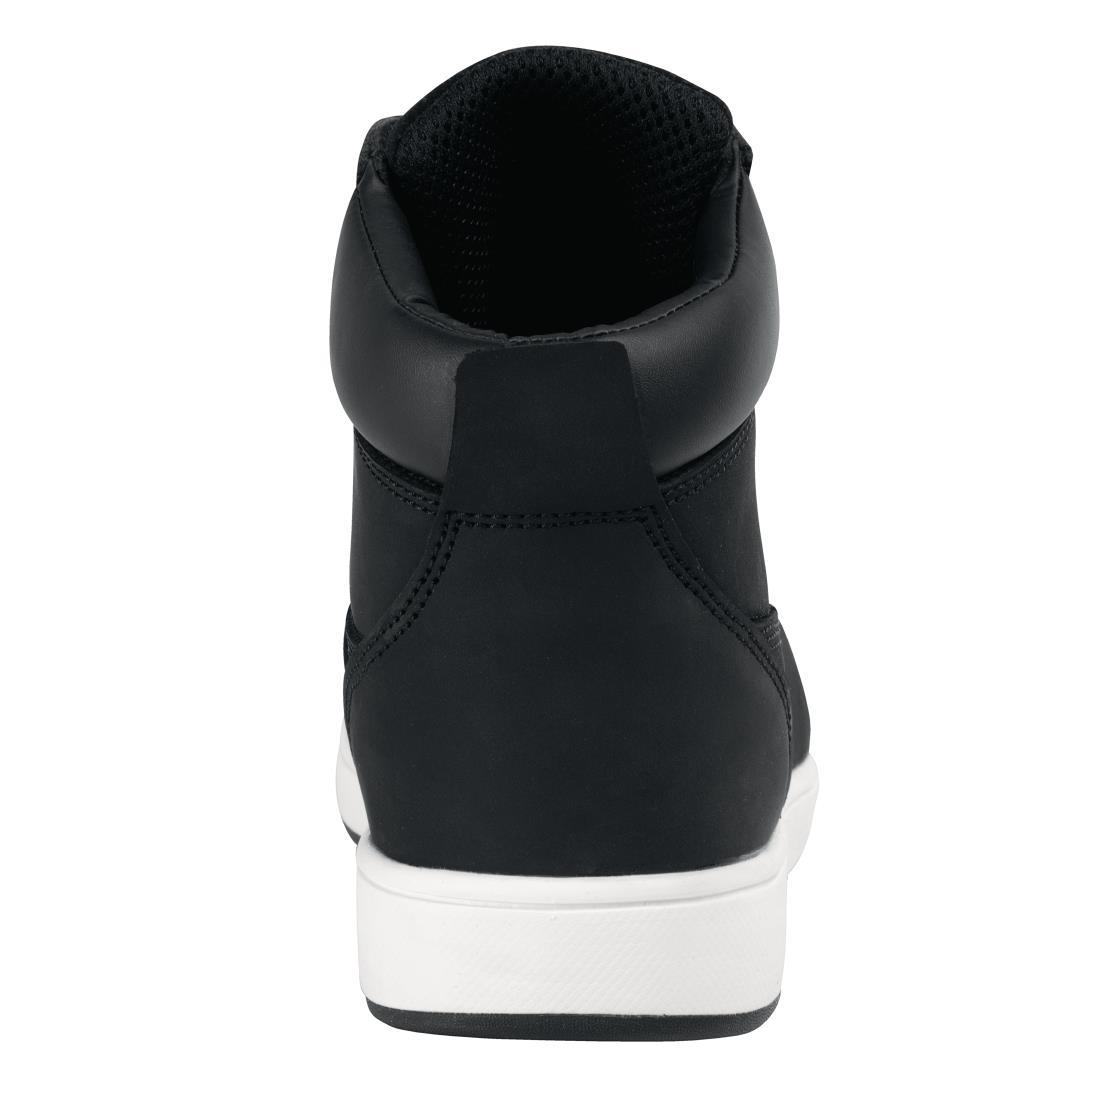 Slipbuster Sneaker Boots Black 45 - BB422-45  - 4